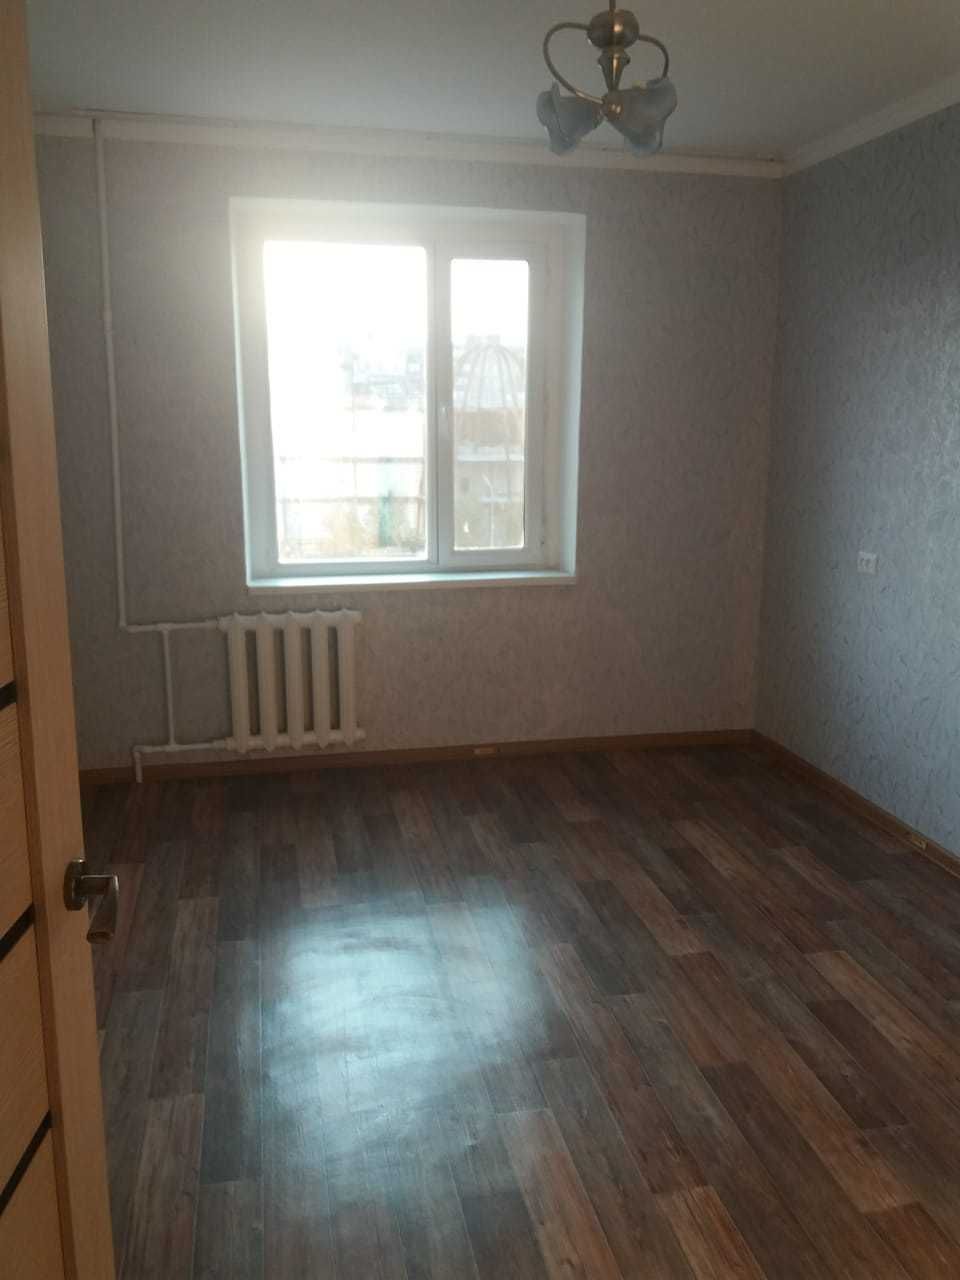 Продам двухкомнатную квартиру в г. Темиртау